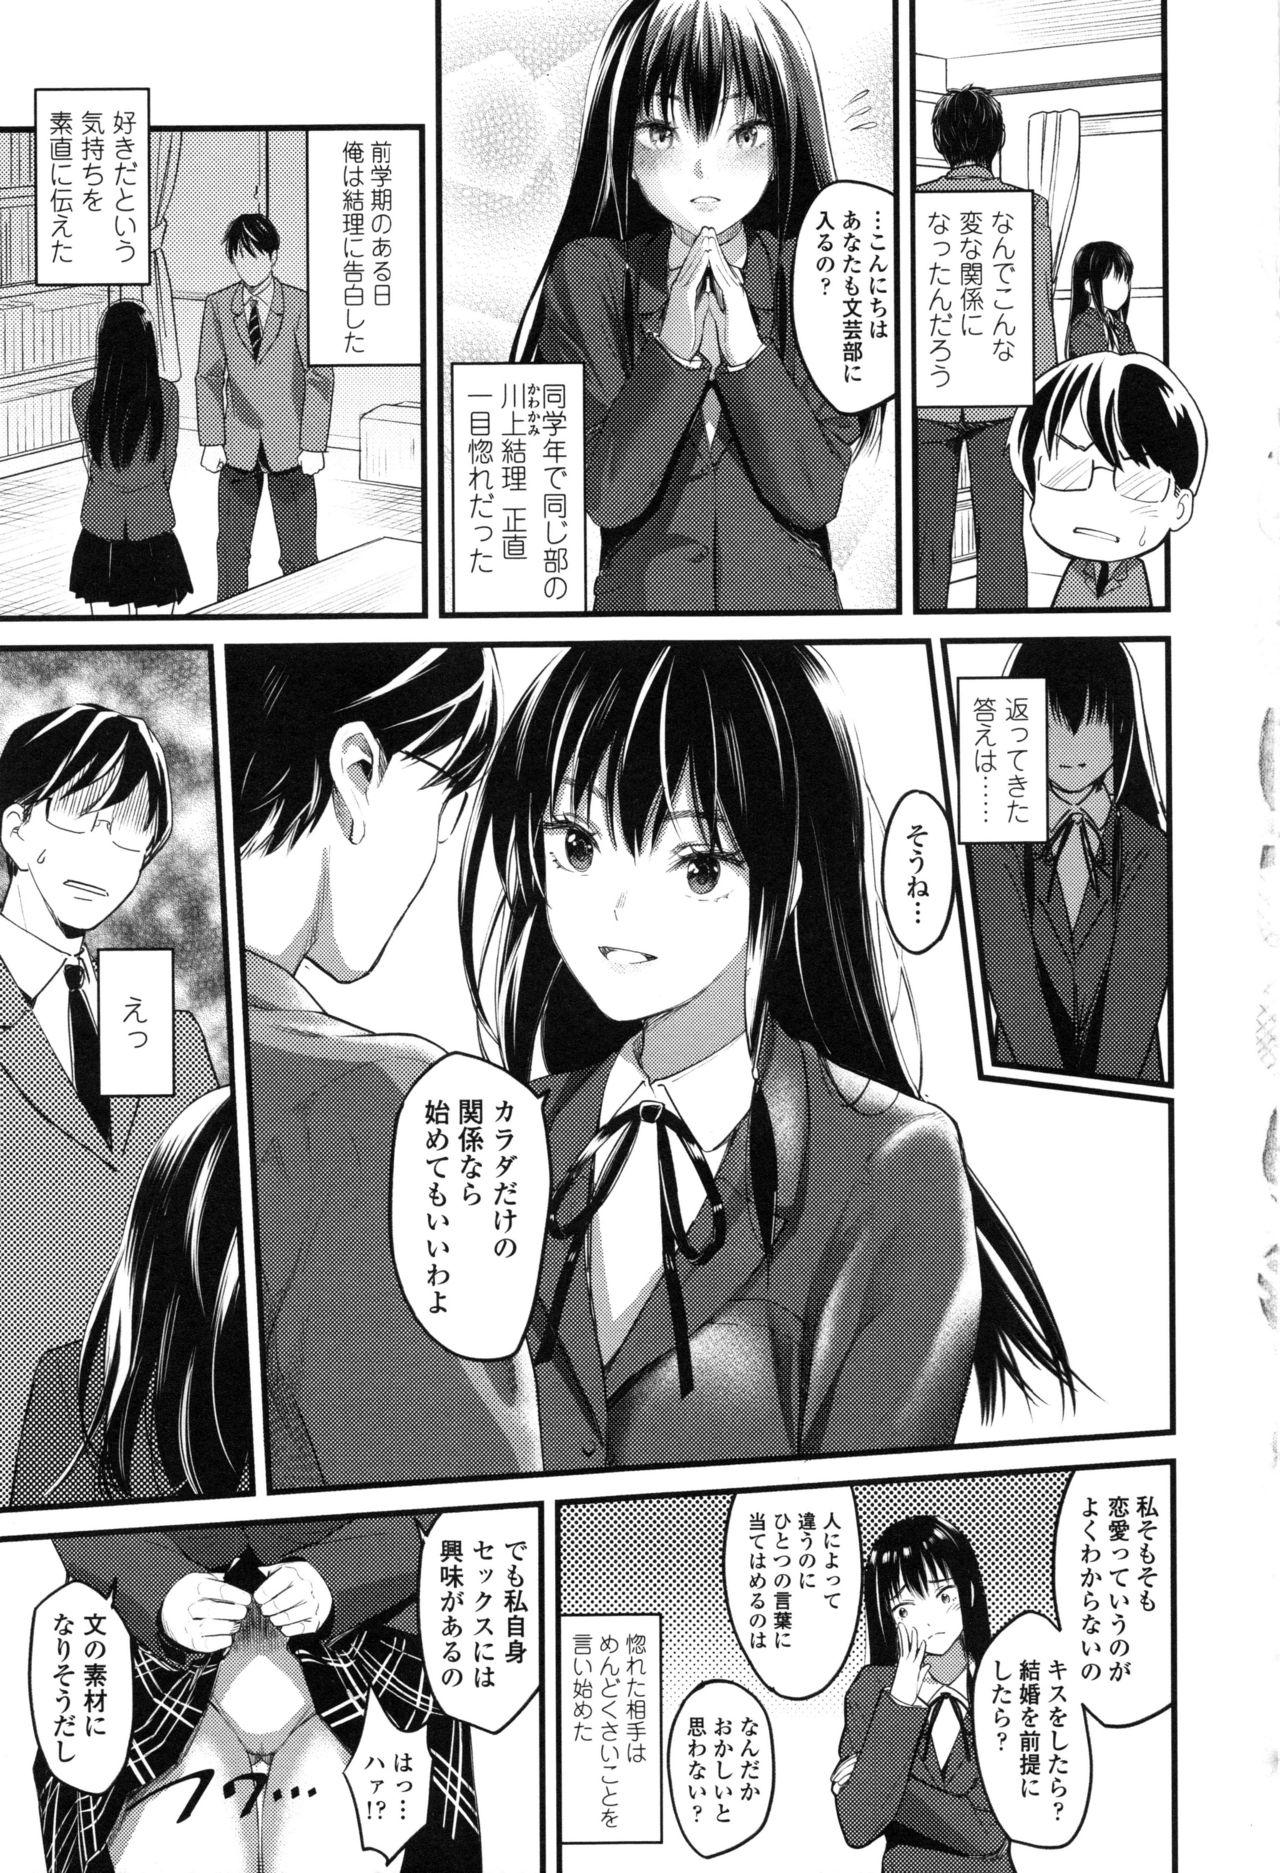 Seifuku no Mama Aishinasai! - Love in school uniform 46